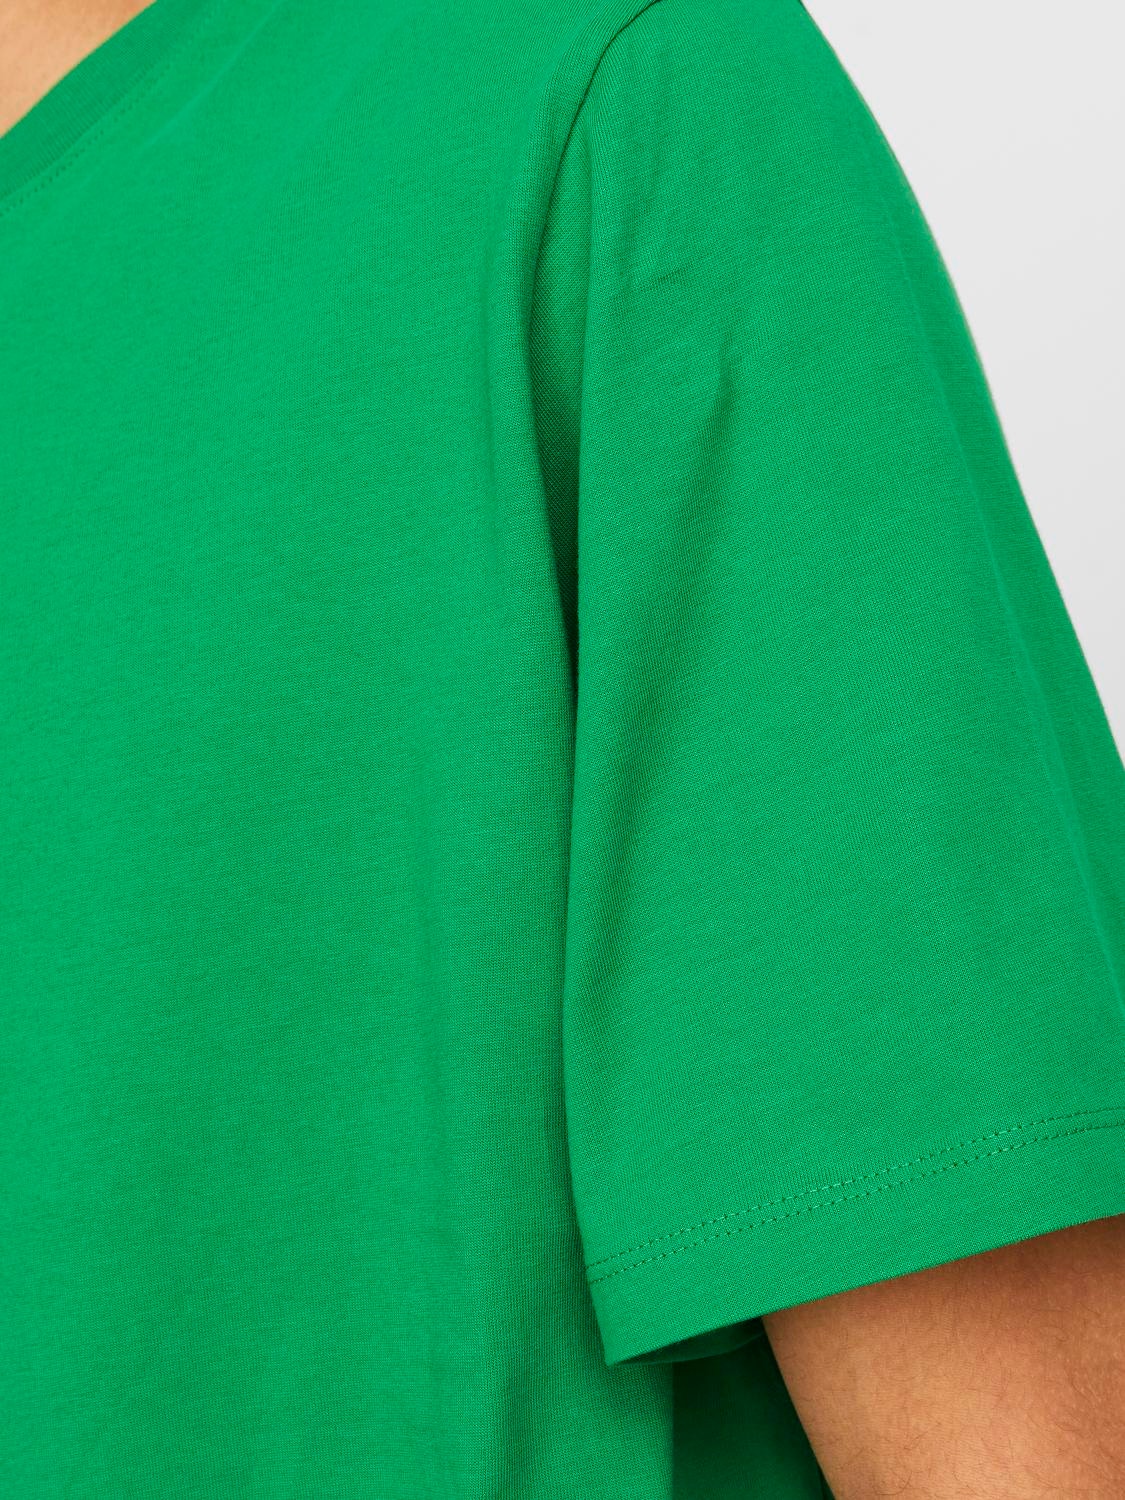 Jack & Jones T-shirt Semplice Girocollo -Green Bee - 12156101